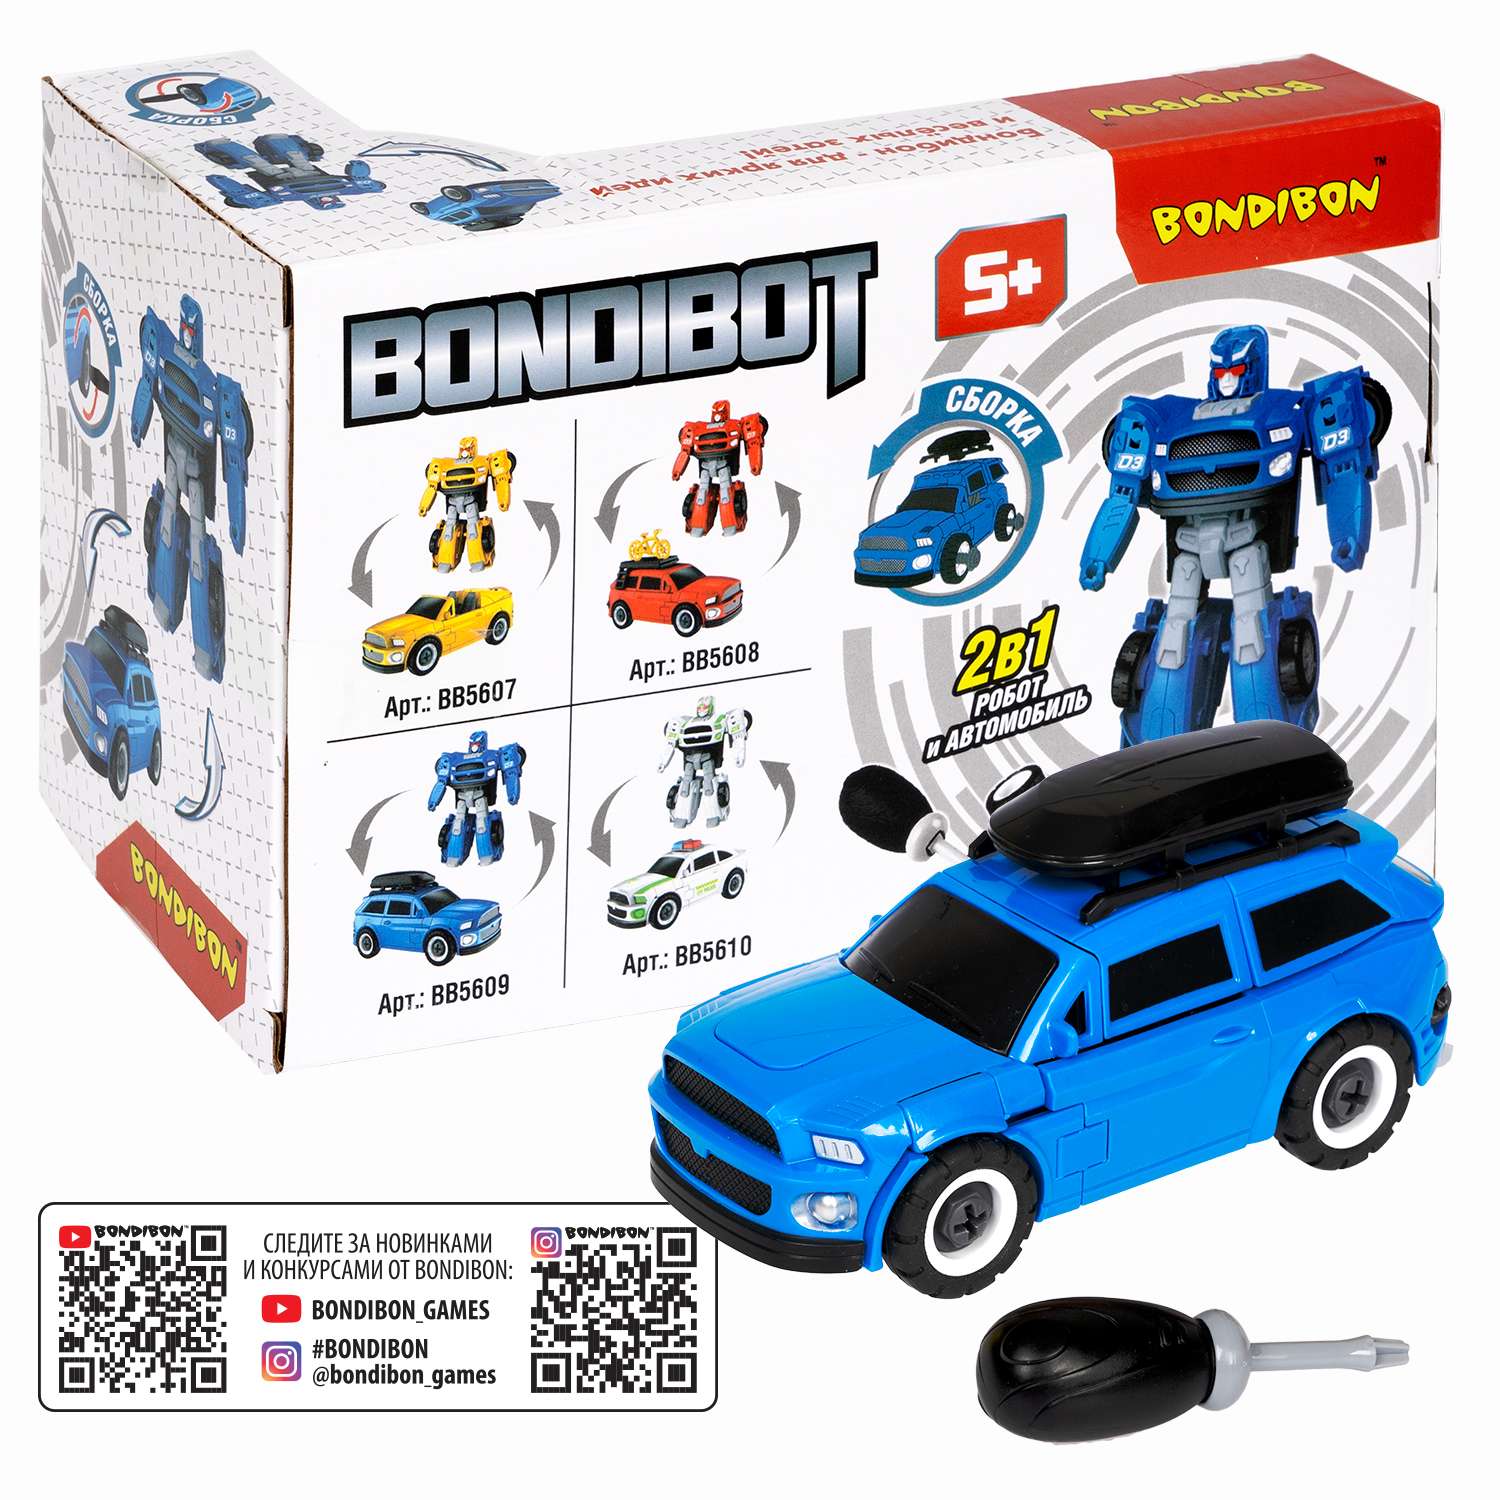 Трансформер BONDIBON Bondibot Робот-автомобиль с отвёрткой 2 в 1 джип синего цвета - фото 12